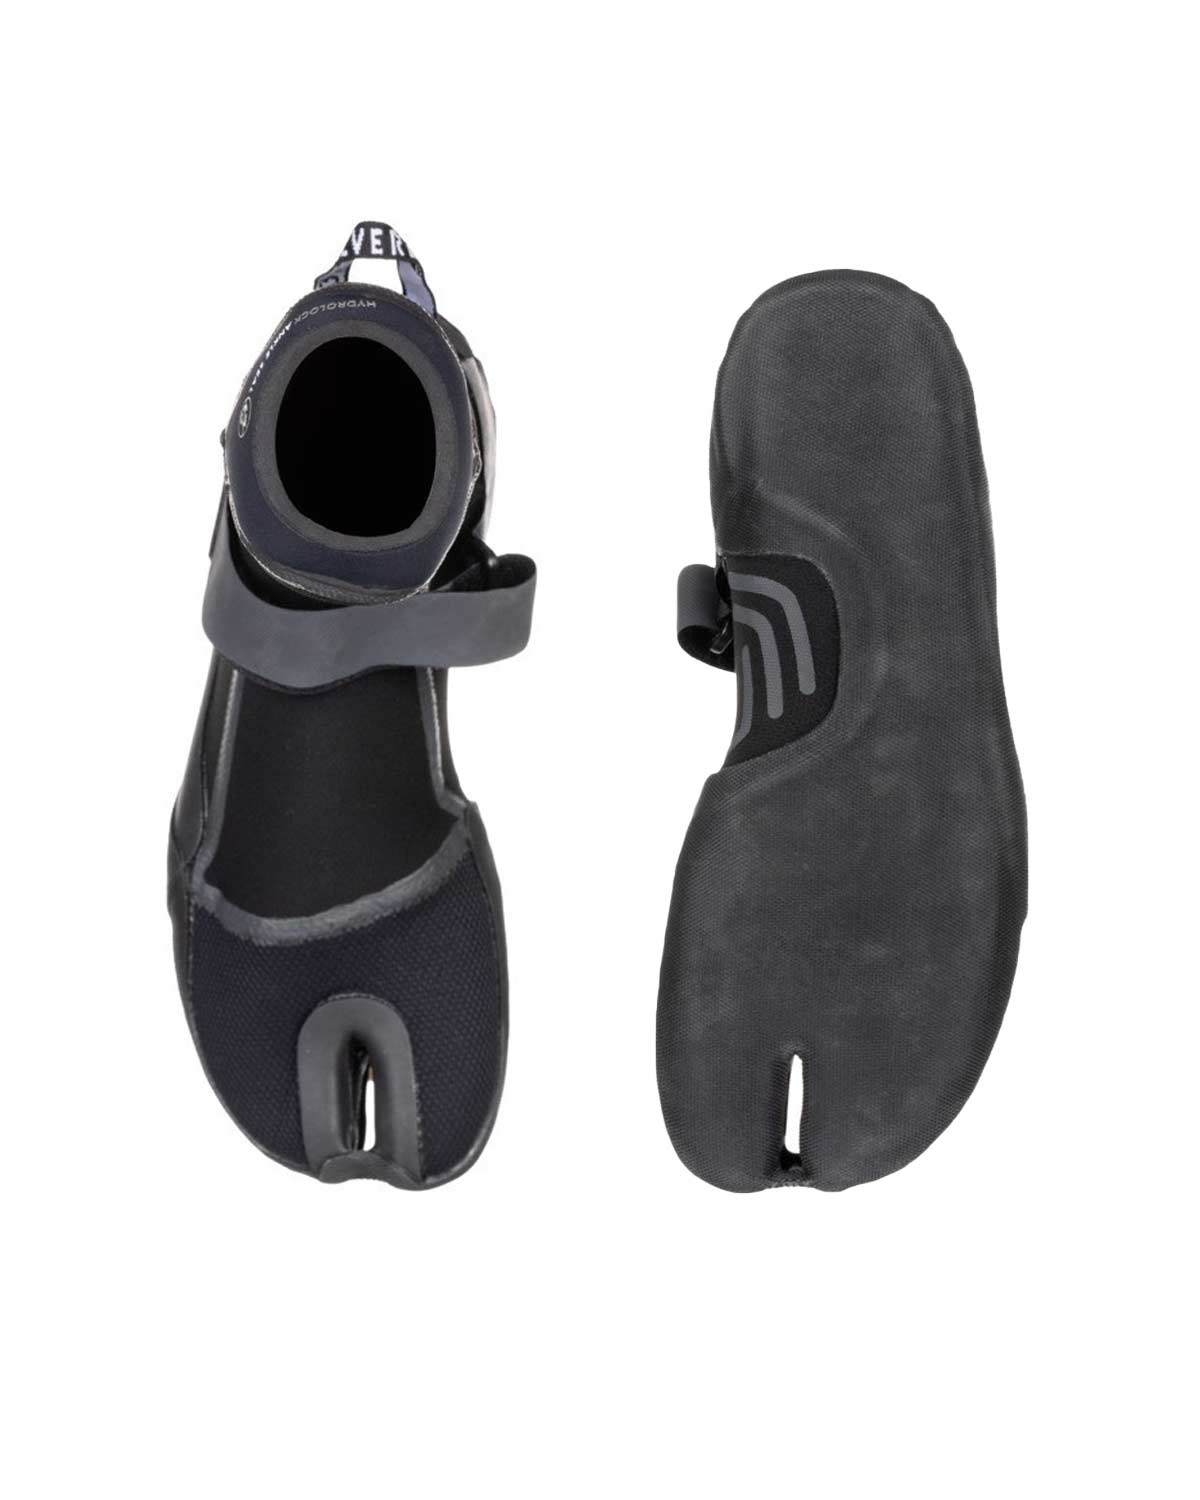 5mm Quiksilver MARATHON SESSIONS Split Toe Wetsuit Boots